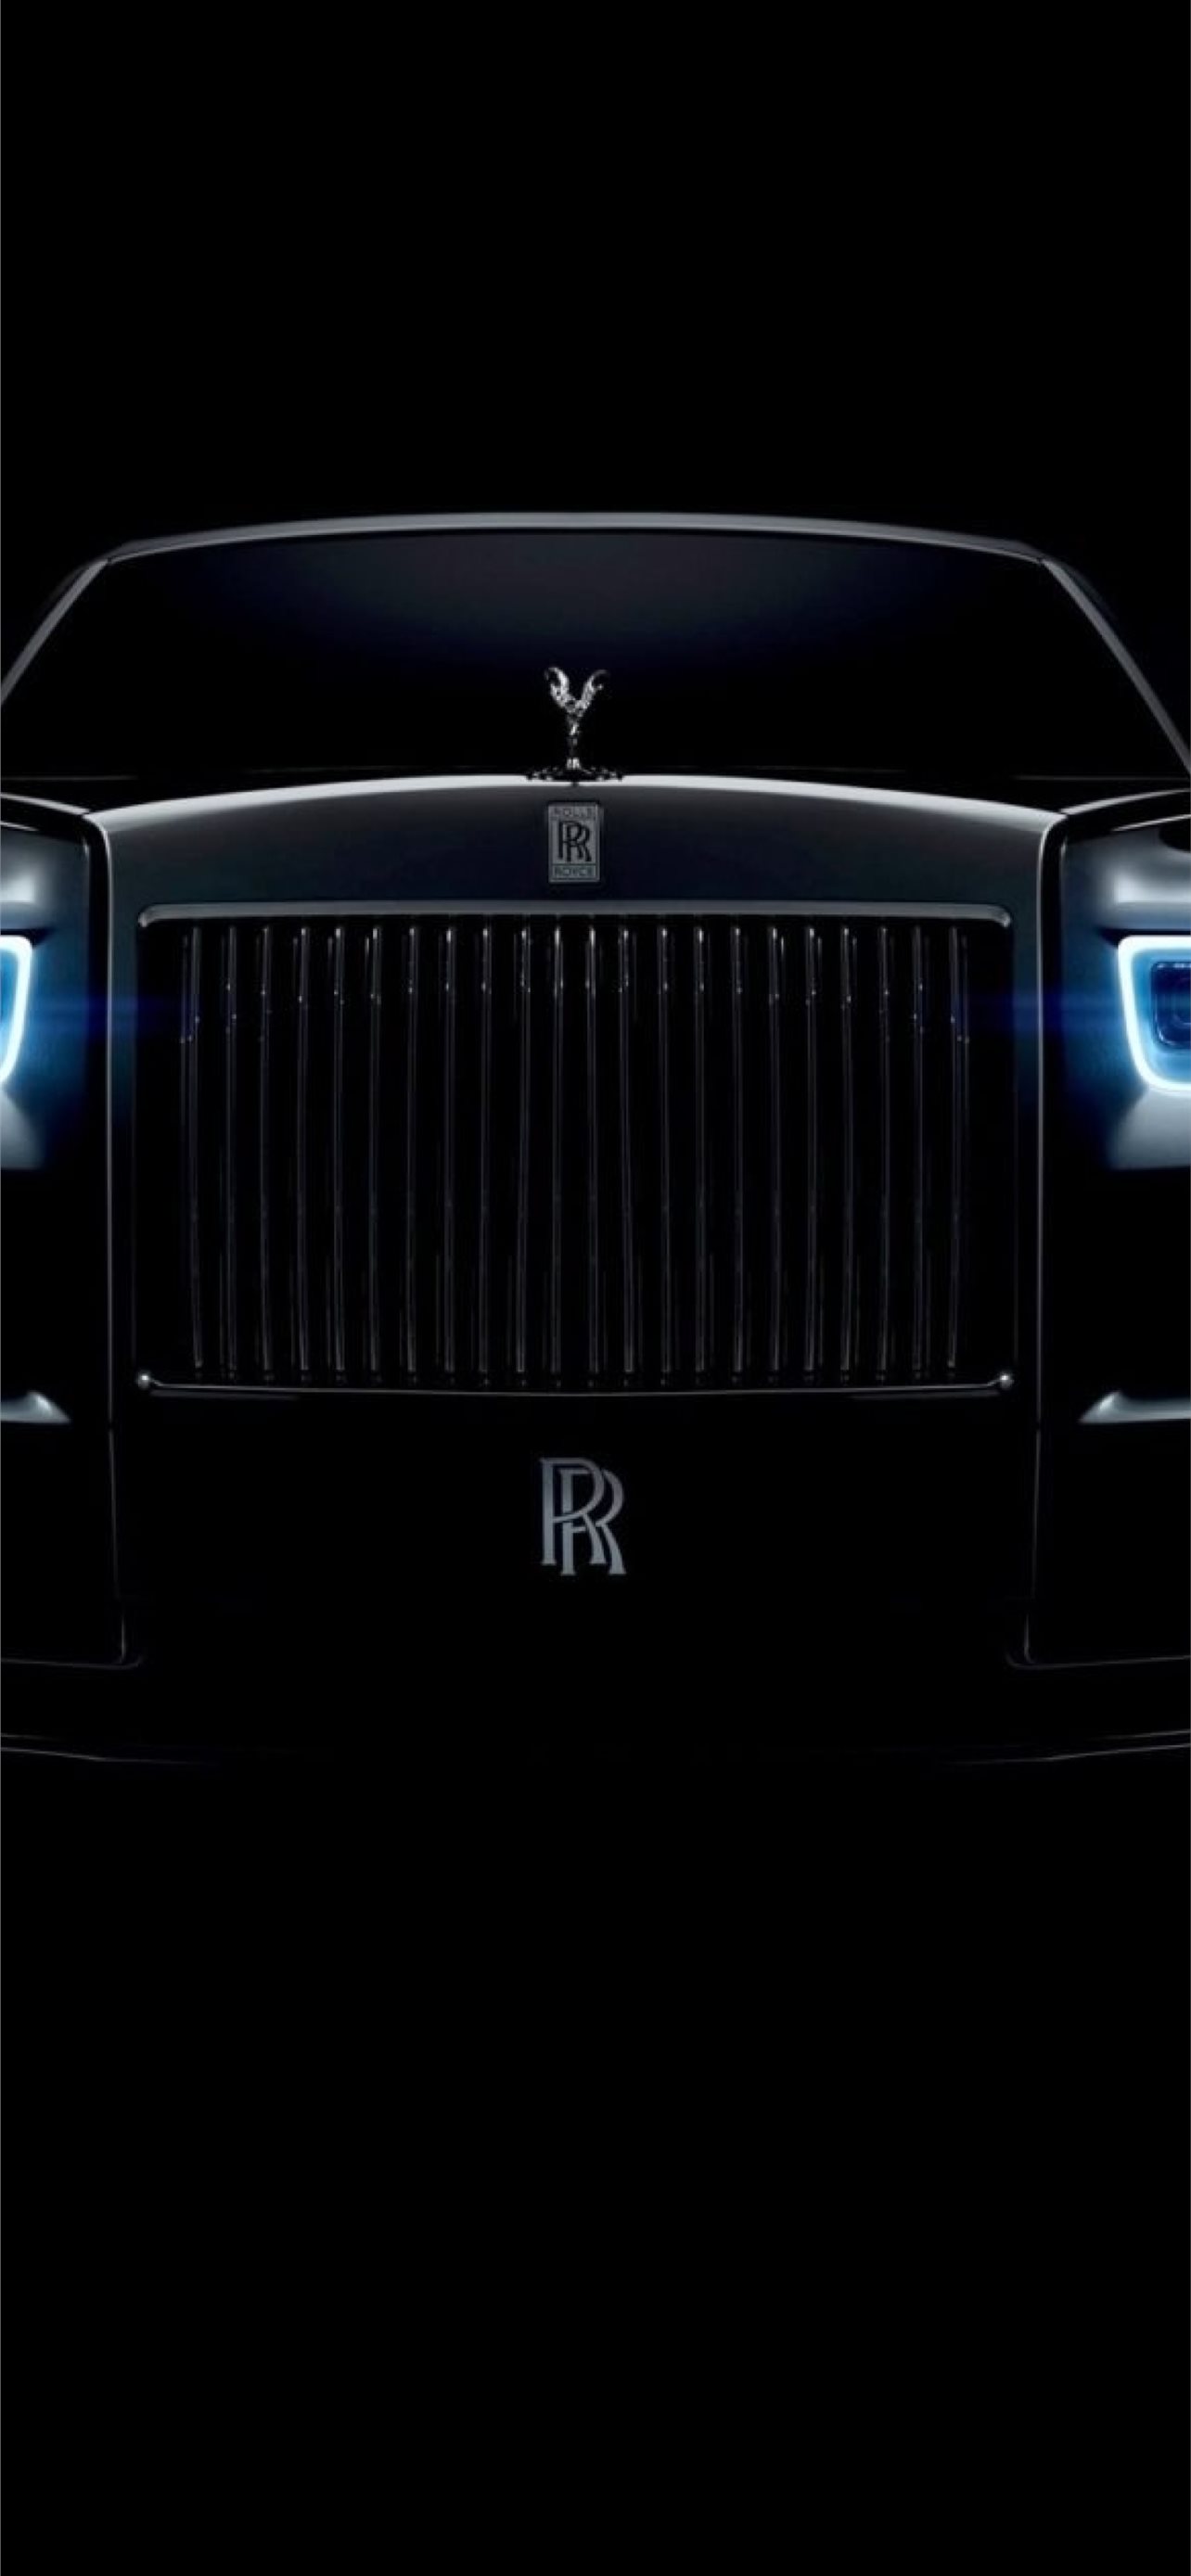 Siêu xe Rolls Royce New Ghost ẩn hiện trong những khu rừng ở Vũng Tàu